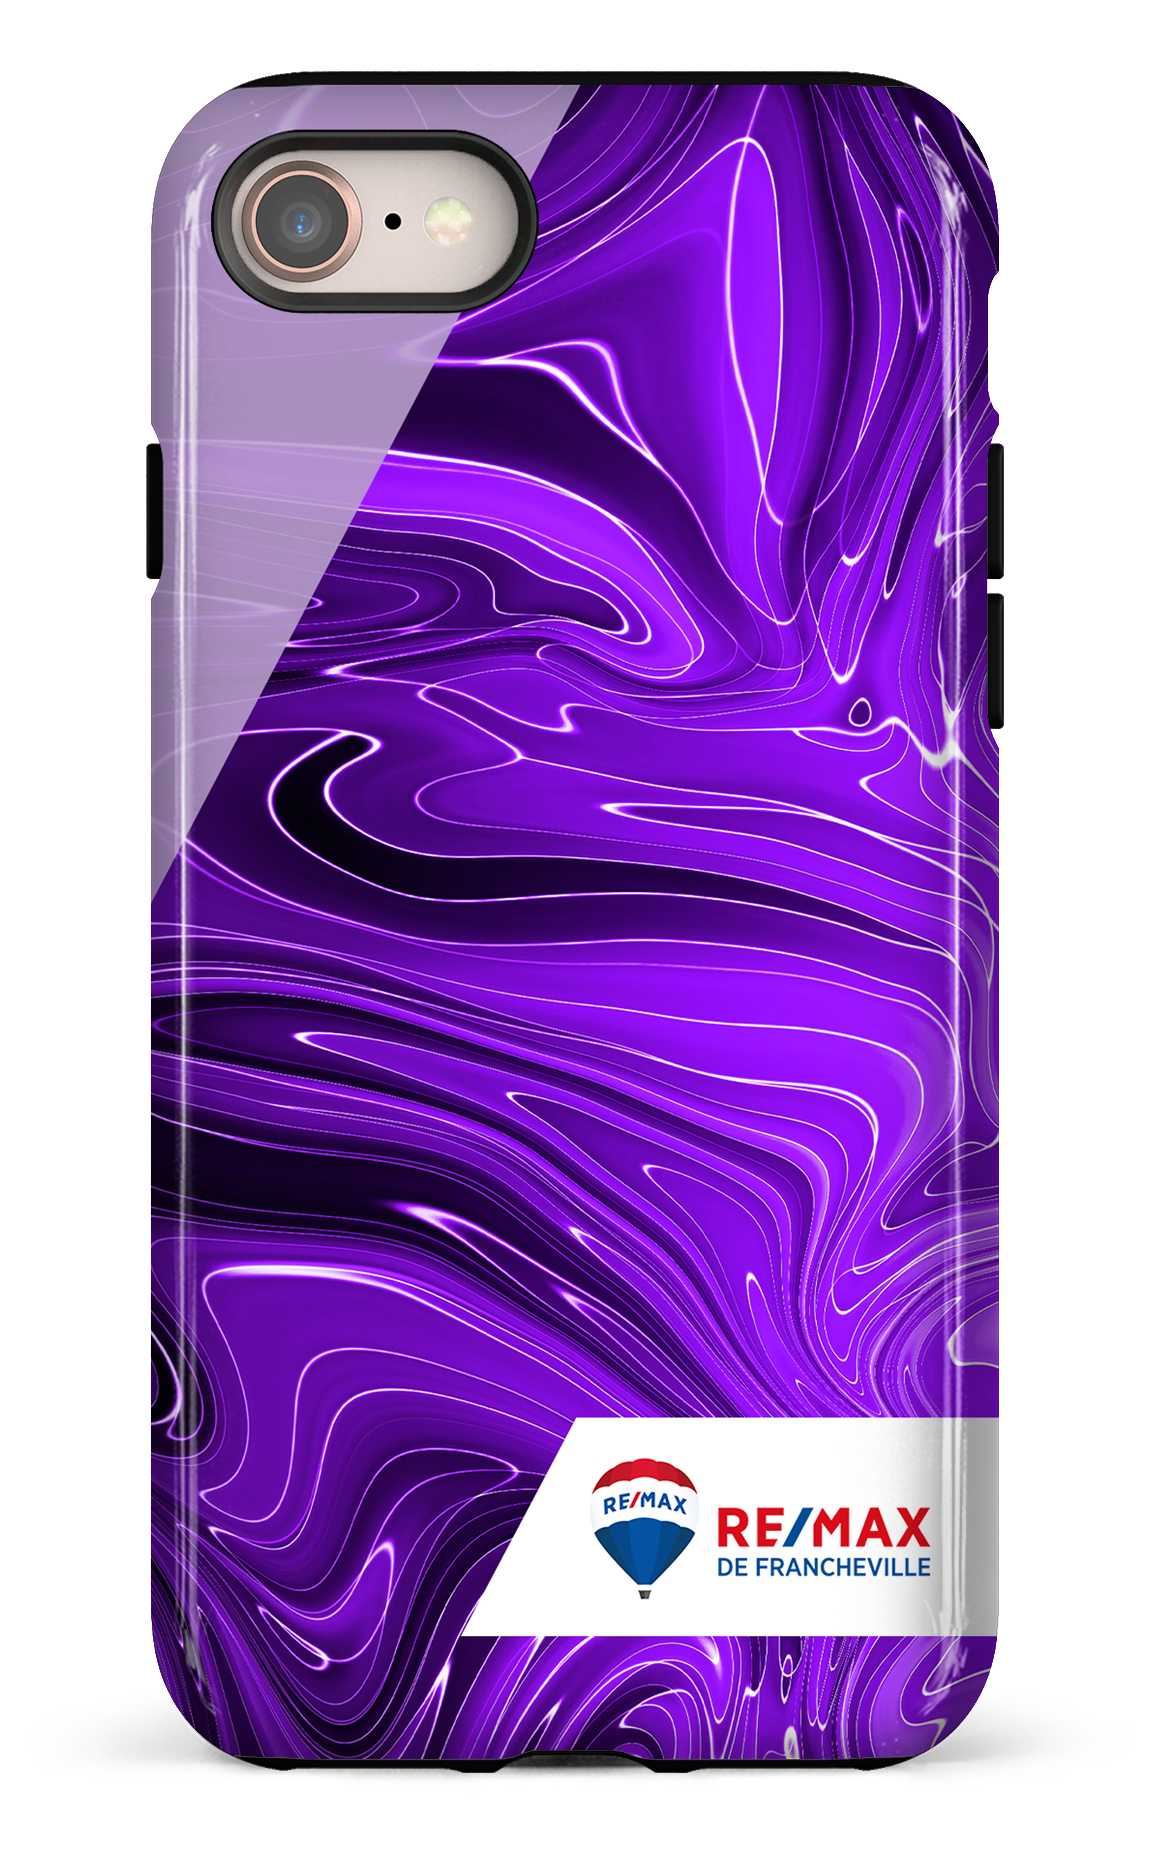 Peinture marbrée sombre violette de Francheville - iPhone 8